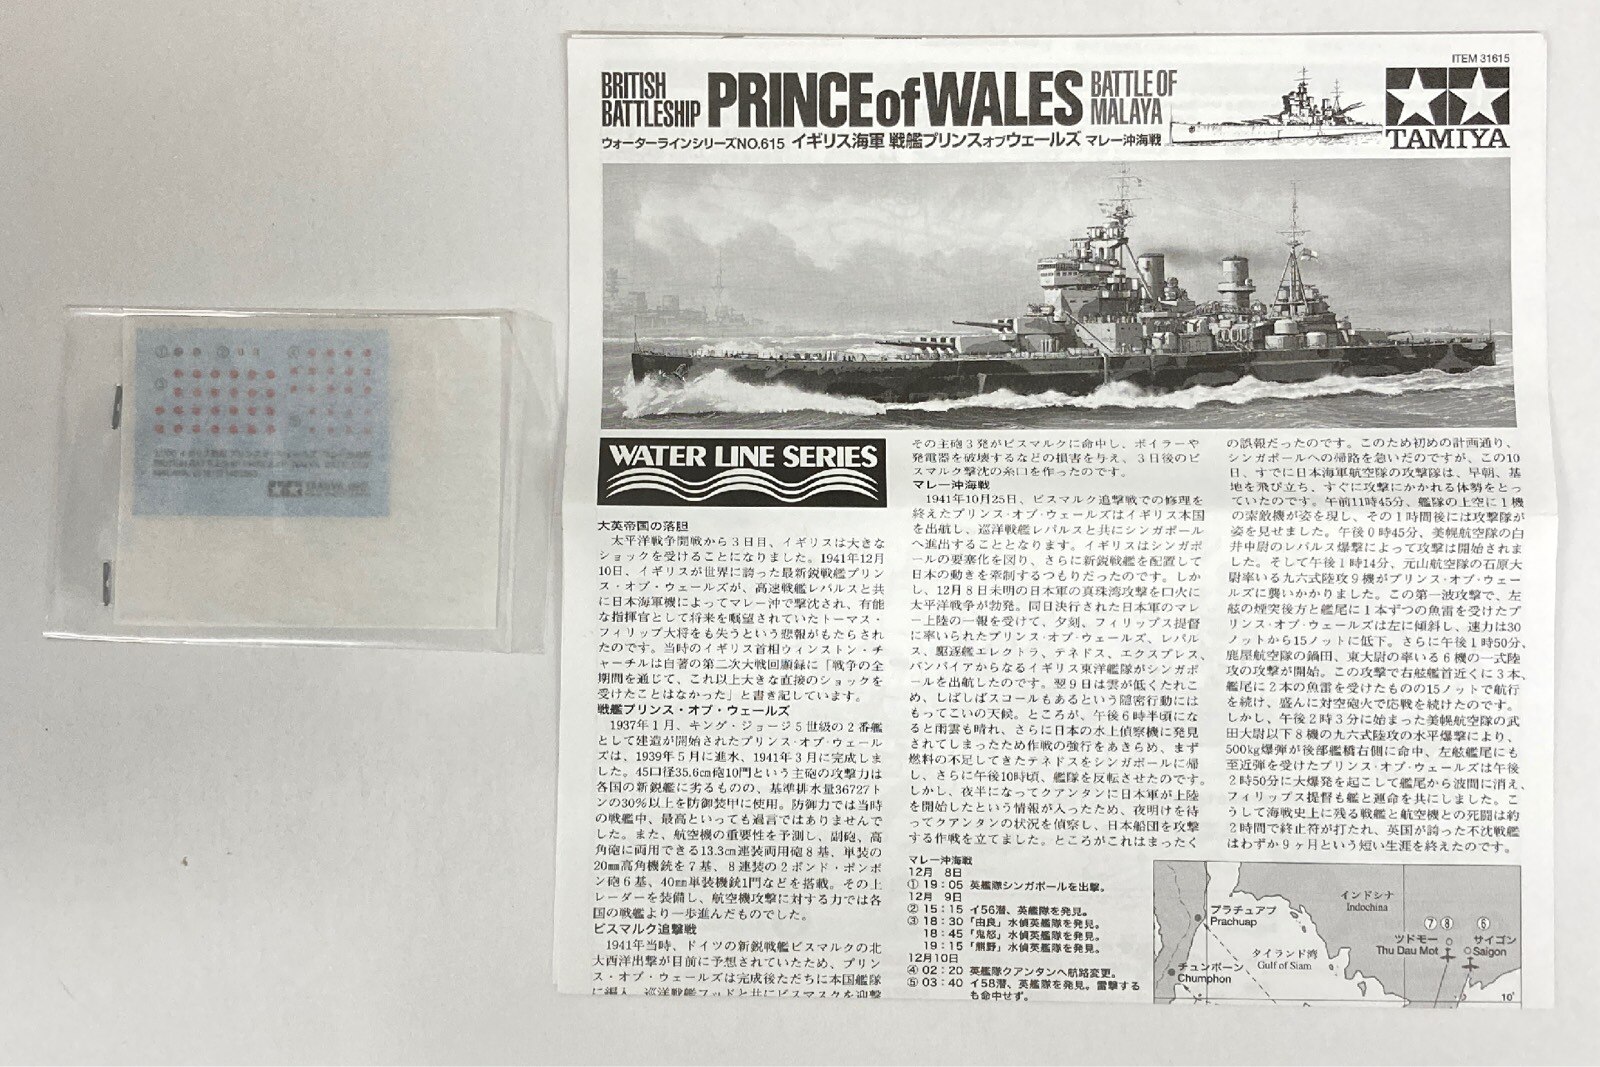 タミヤ 1/700 ウォーターラインシリーズ イギリス海軍戦艦プリンスオブウェールズ マレー沖海戦 615 | まんだらけ Mandarake